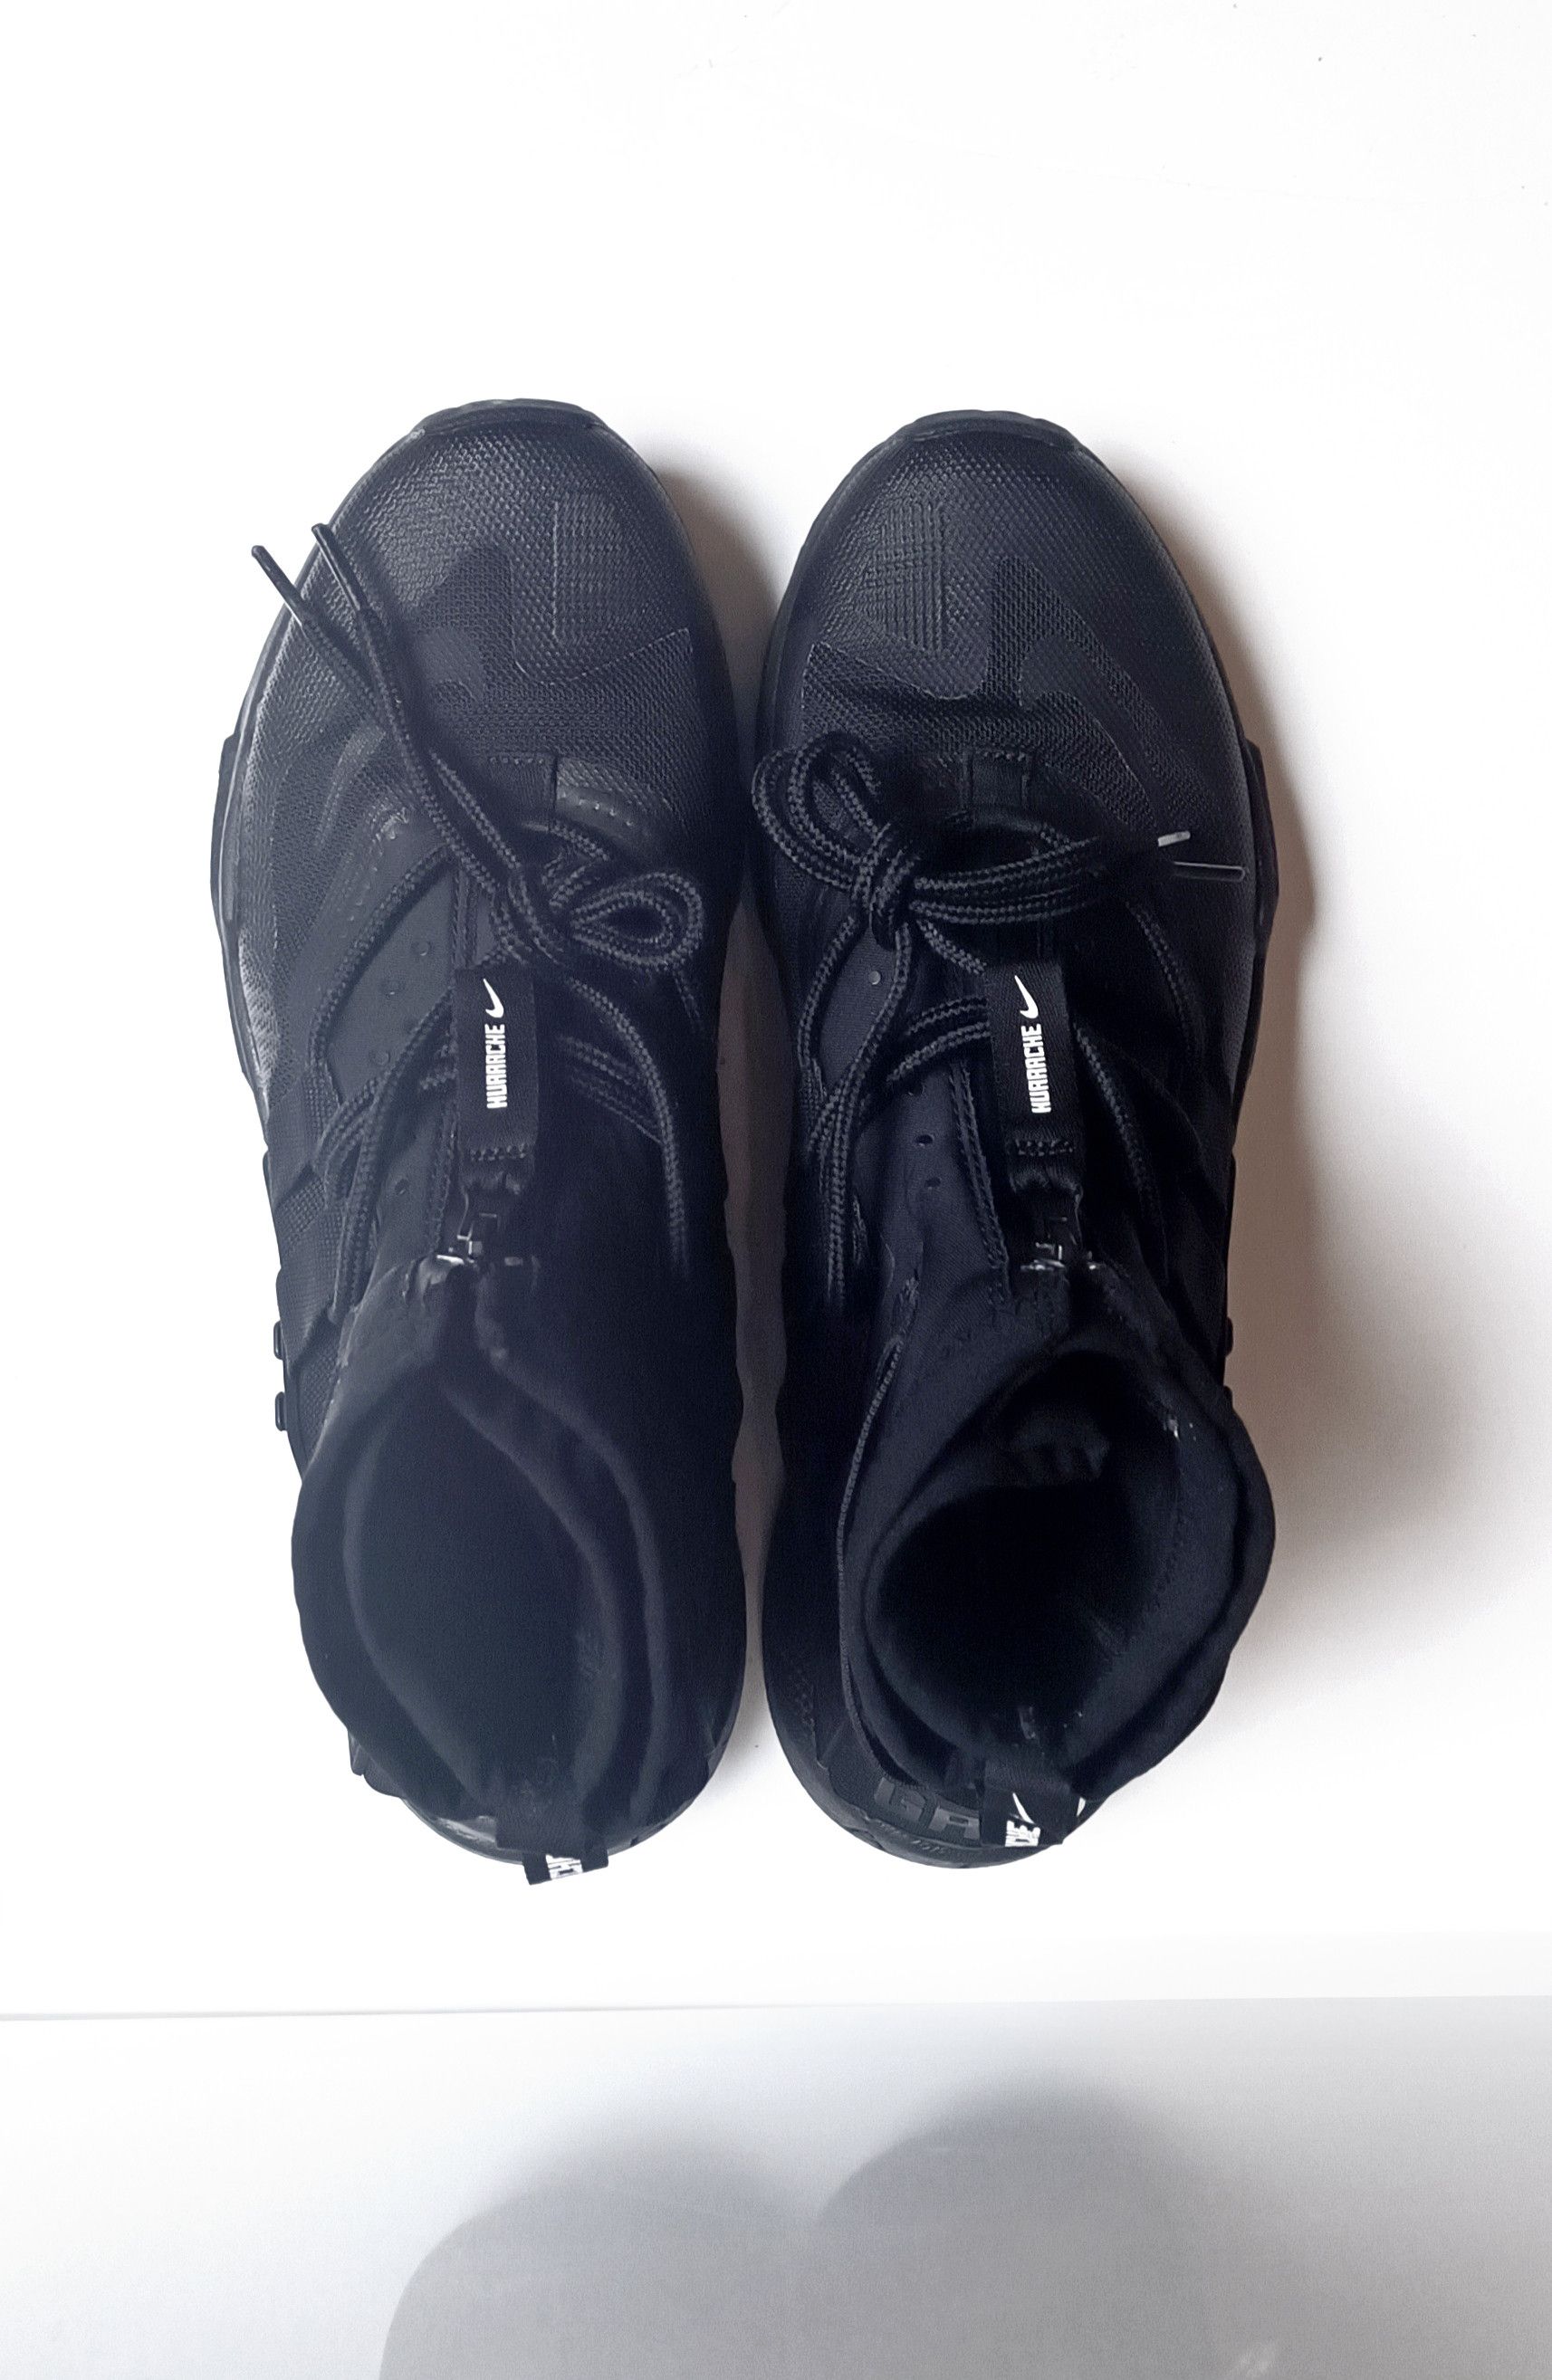 Nike Air Huarache Gripp 'Triple Black' (Rare) - 4